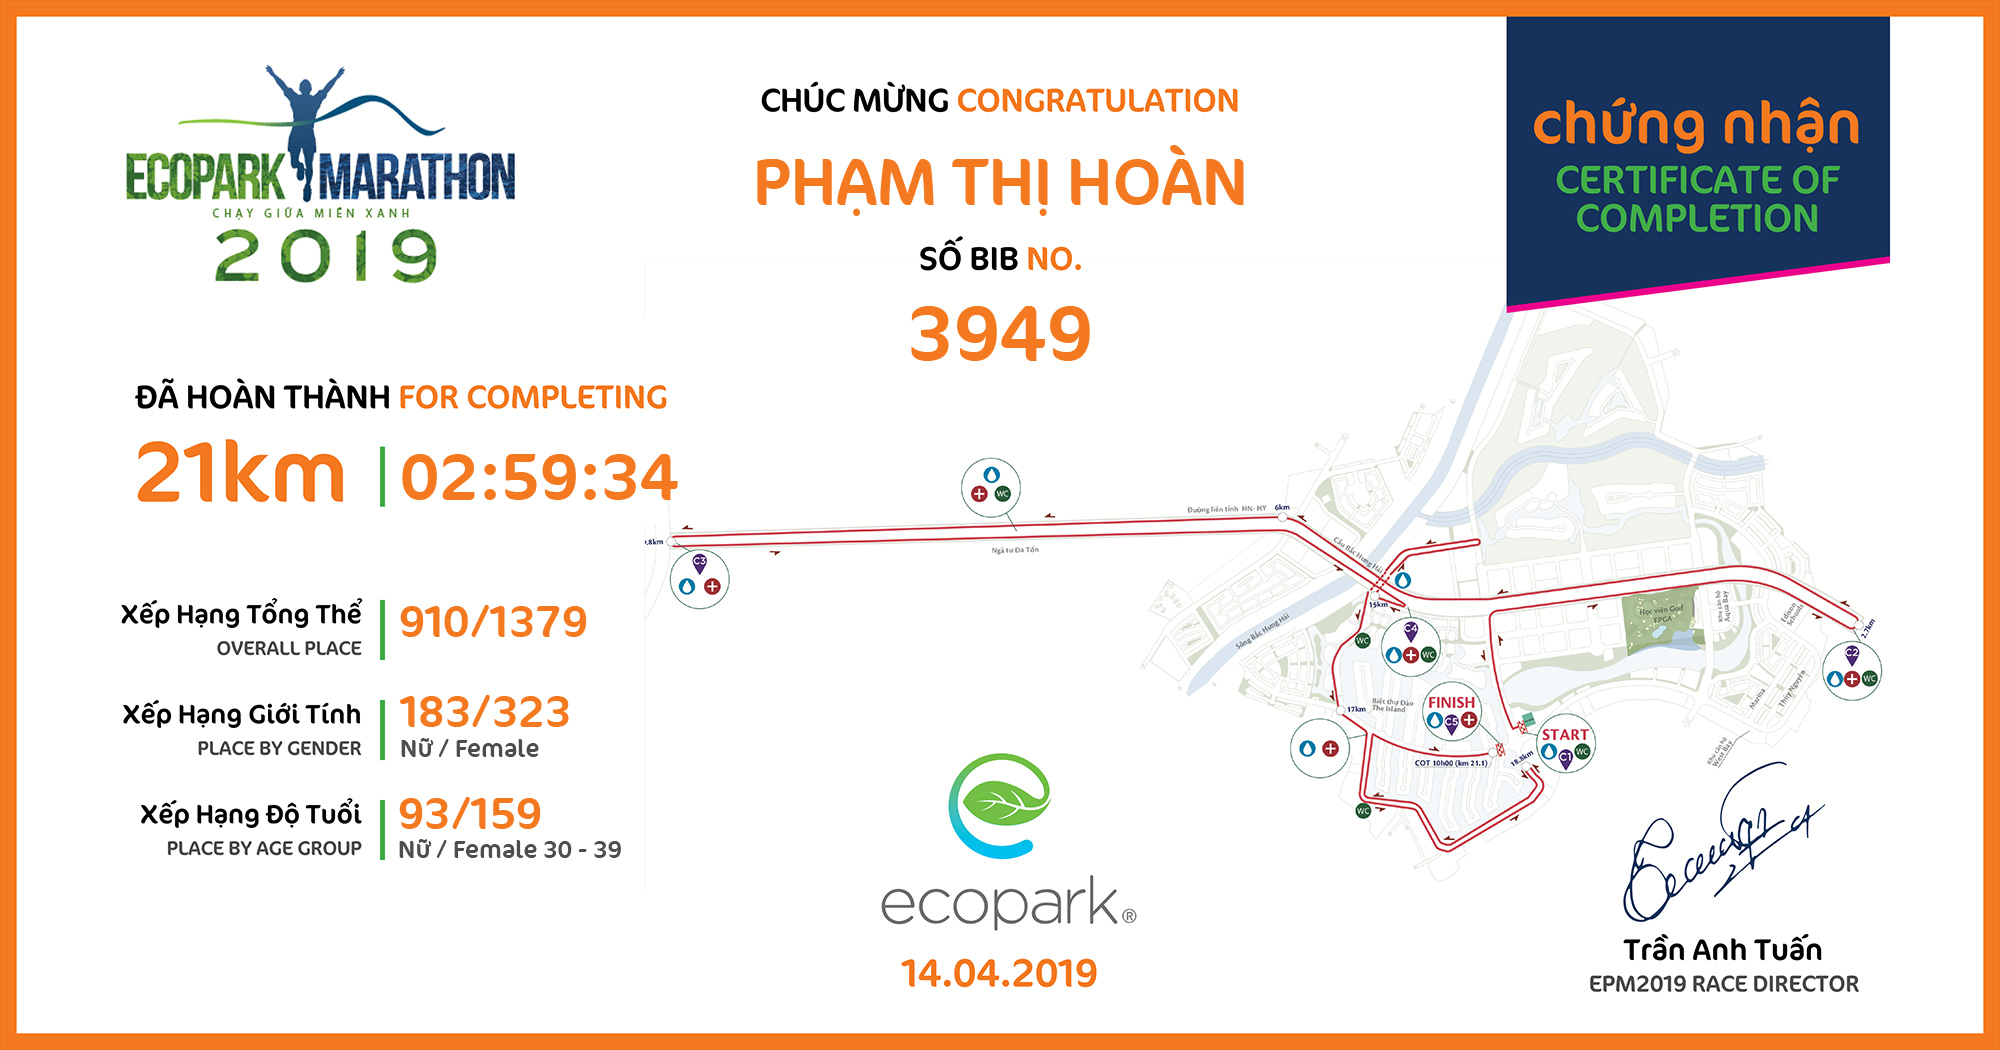 3949 - Phạm Thị Hoàn